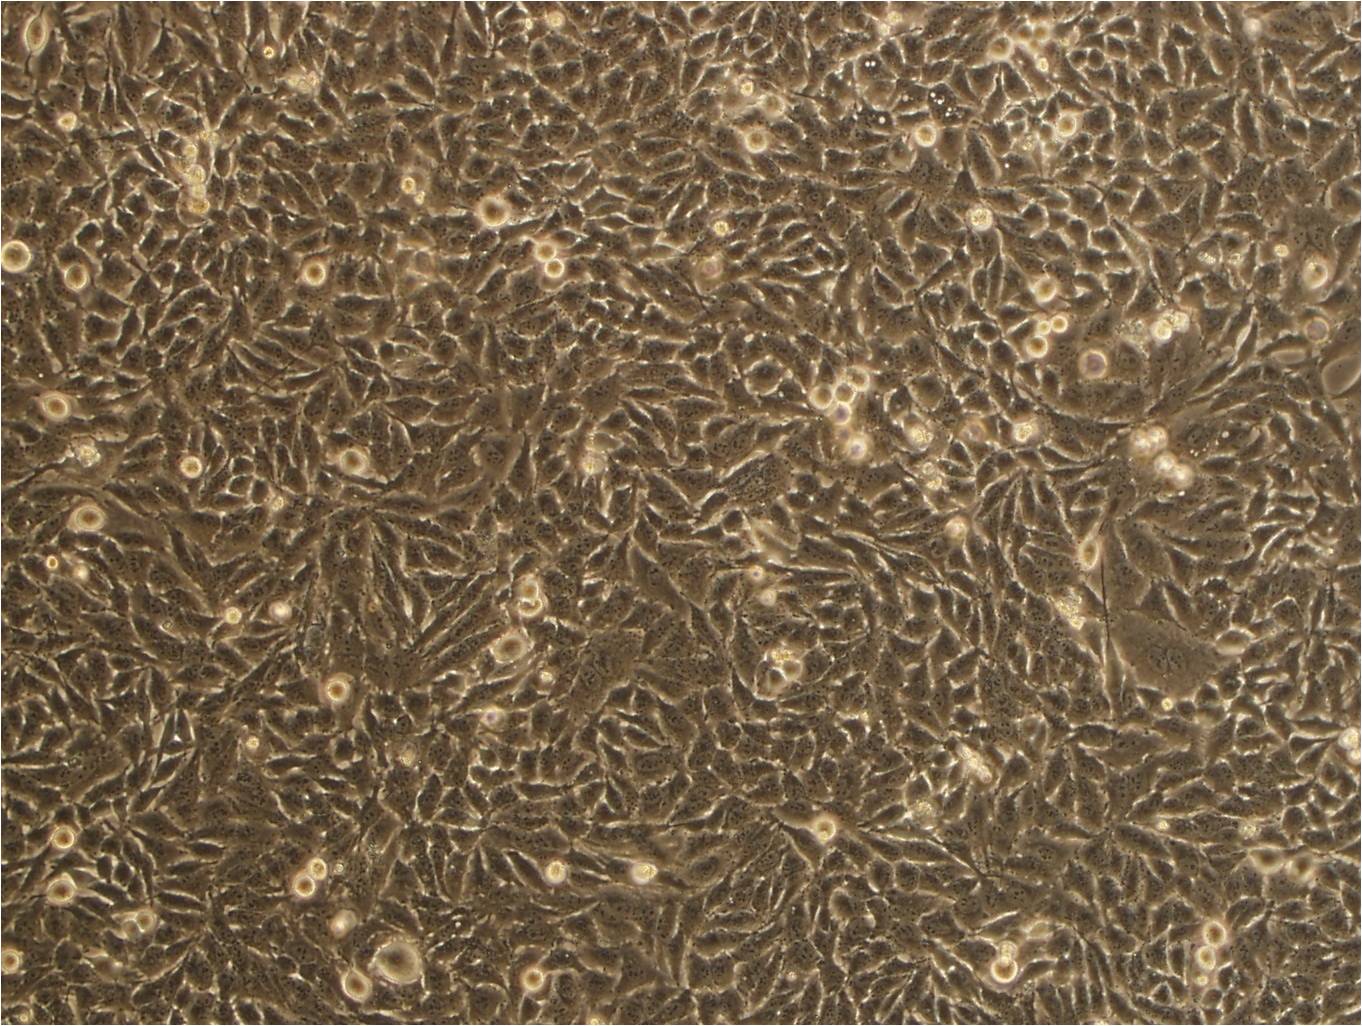 SGC-7901 epithelioid cells人胃癌细胞系,SGC-7901 epithelioid cells